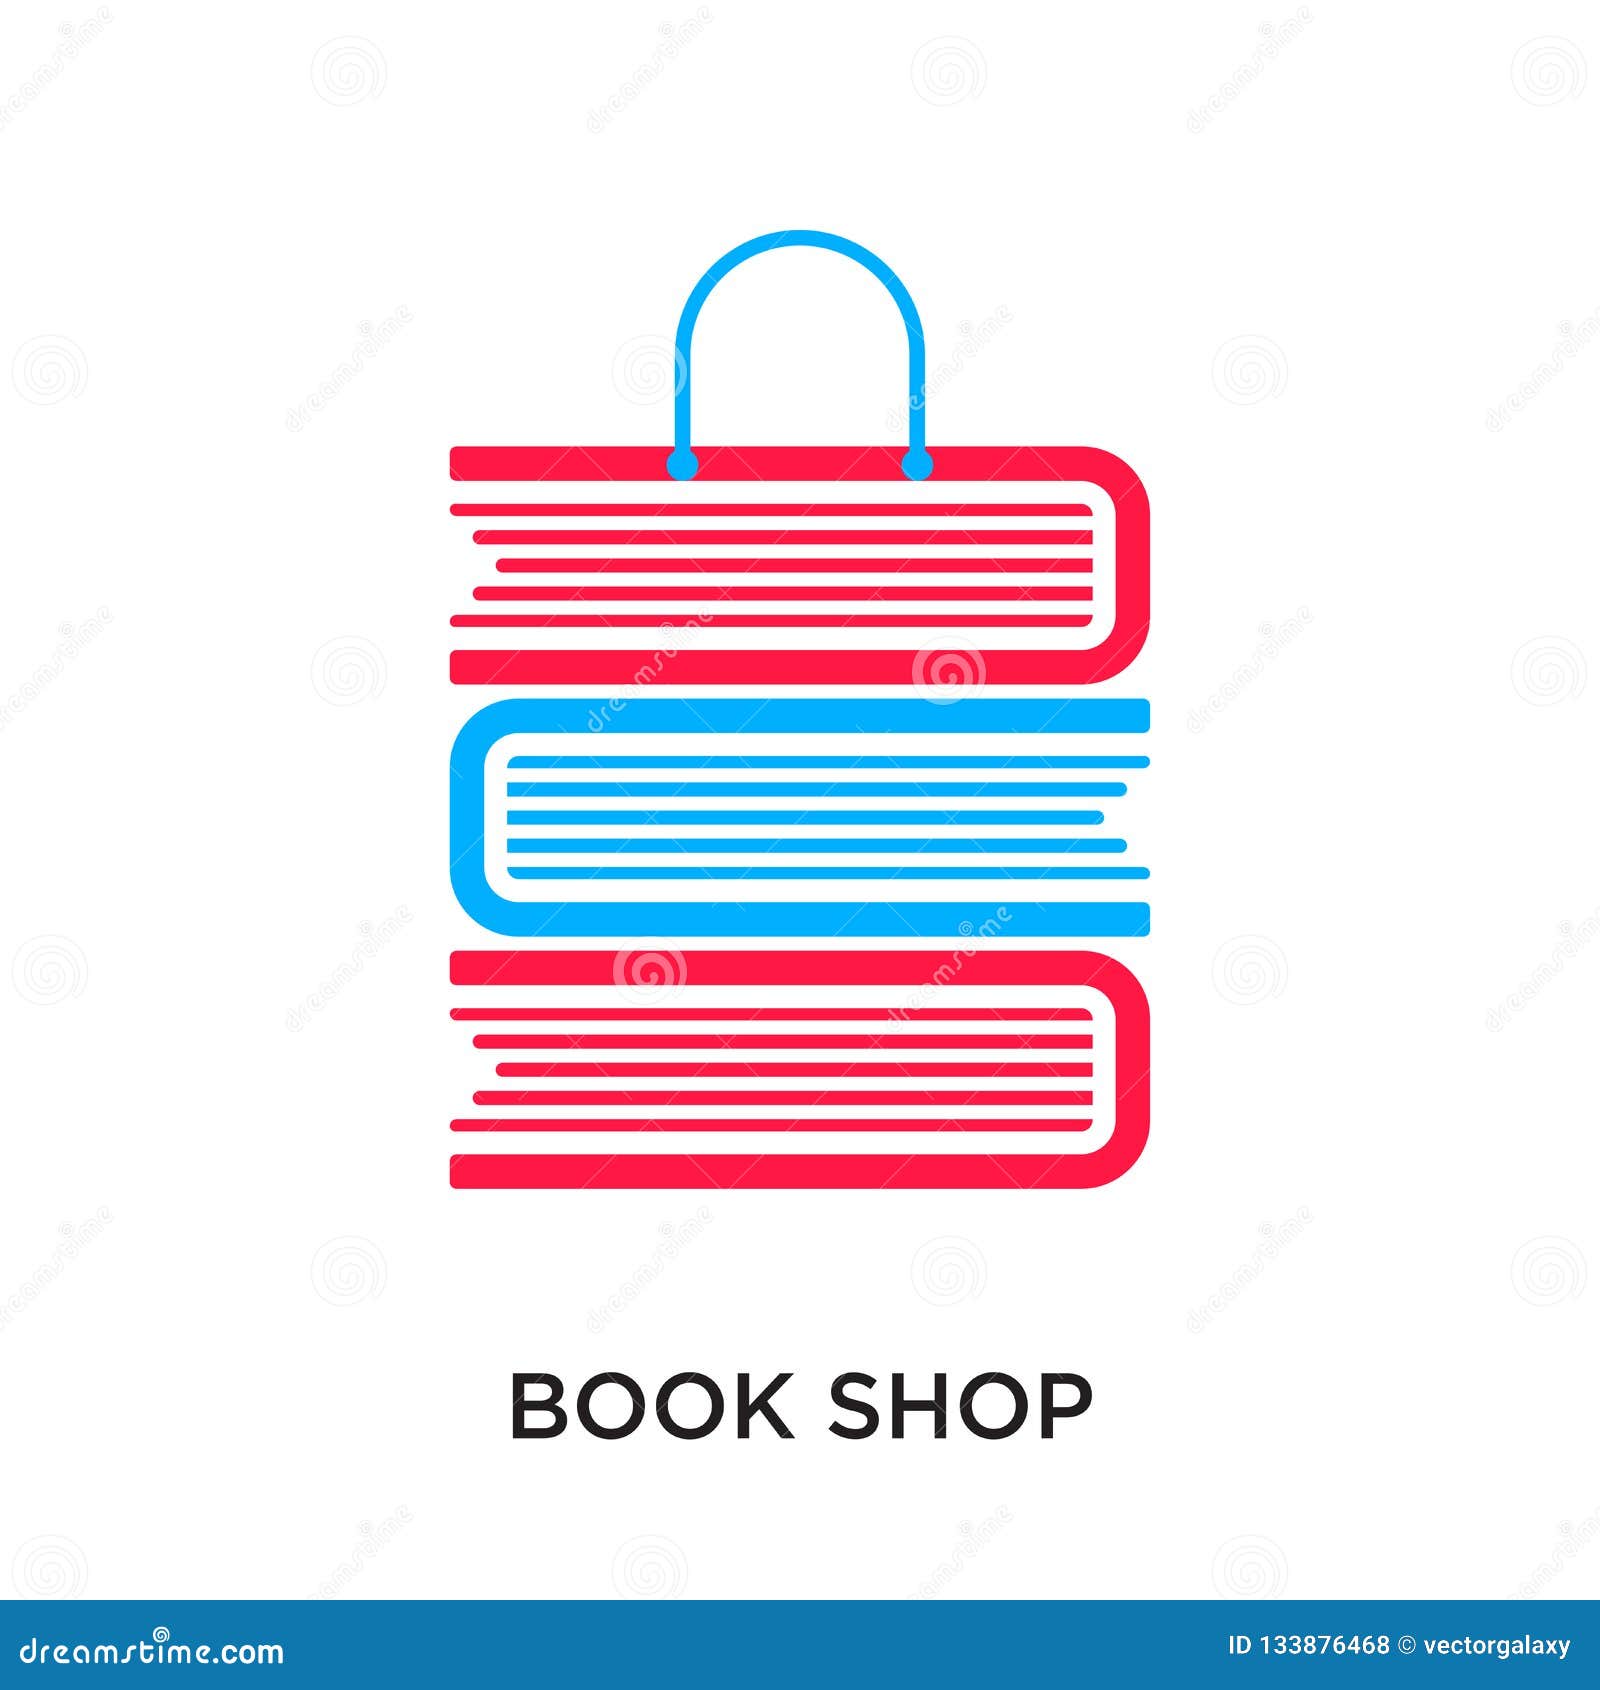 Like shop book. Логотип для книжного интернет магазина. Логотип для книжного магазина и слоган. Придумать эмблему для книжного магазина.